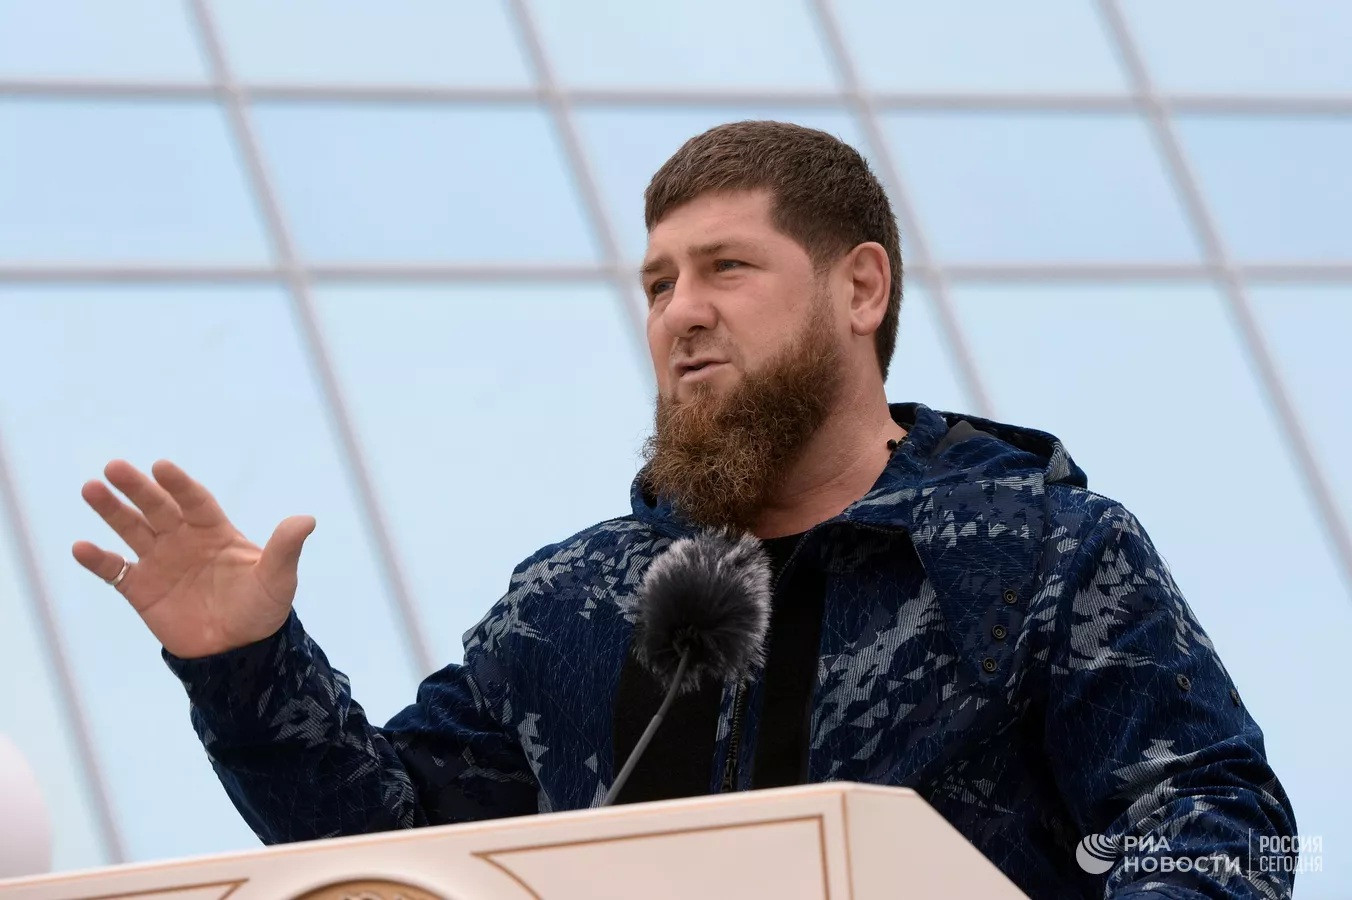 Lãnh đạo Chechnya nói tái điều quân tới Donetsk, kêu gọi thiết quân luật ở Nga